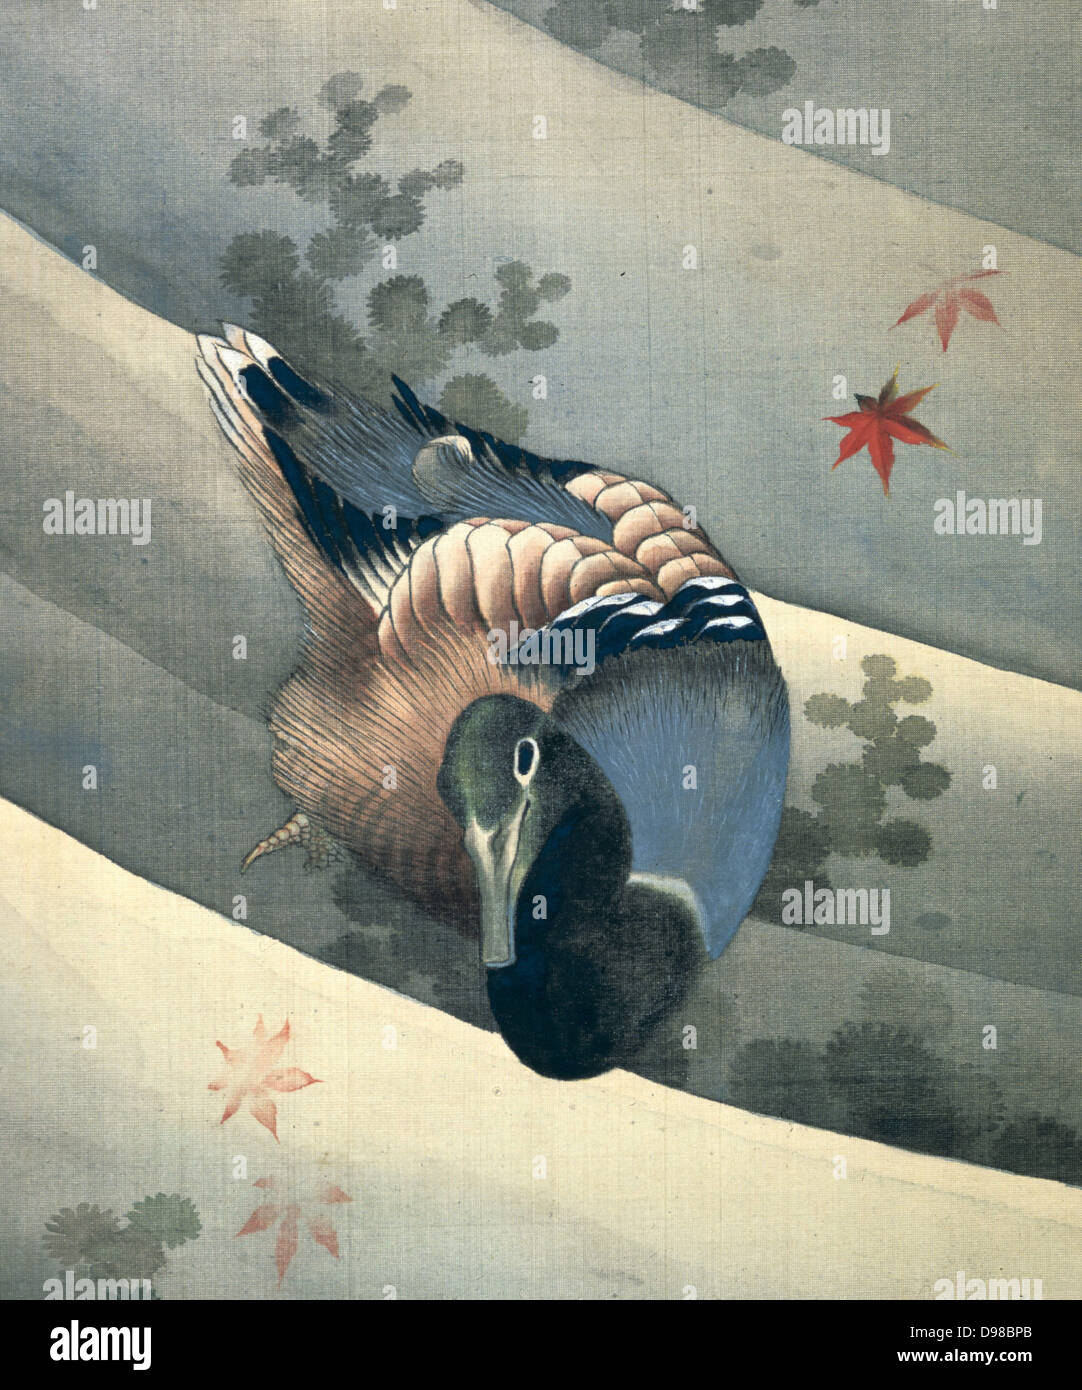 Piscine de canard dans l'eau", 1847. Encre et couleurs sur soie. Katsushika Hokusai (1770-1849) artiste japonais et graveur. Banque D'Images